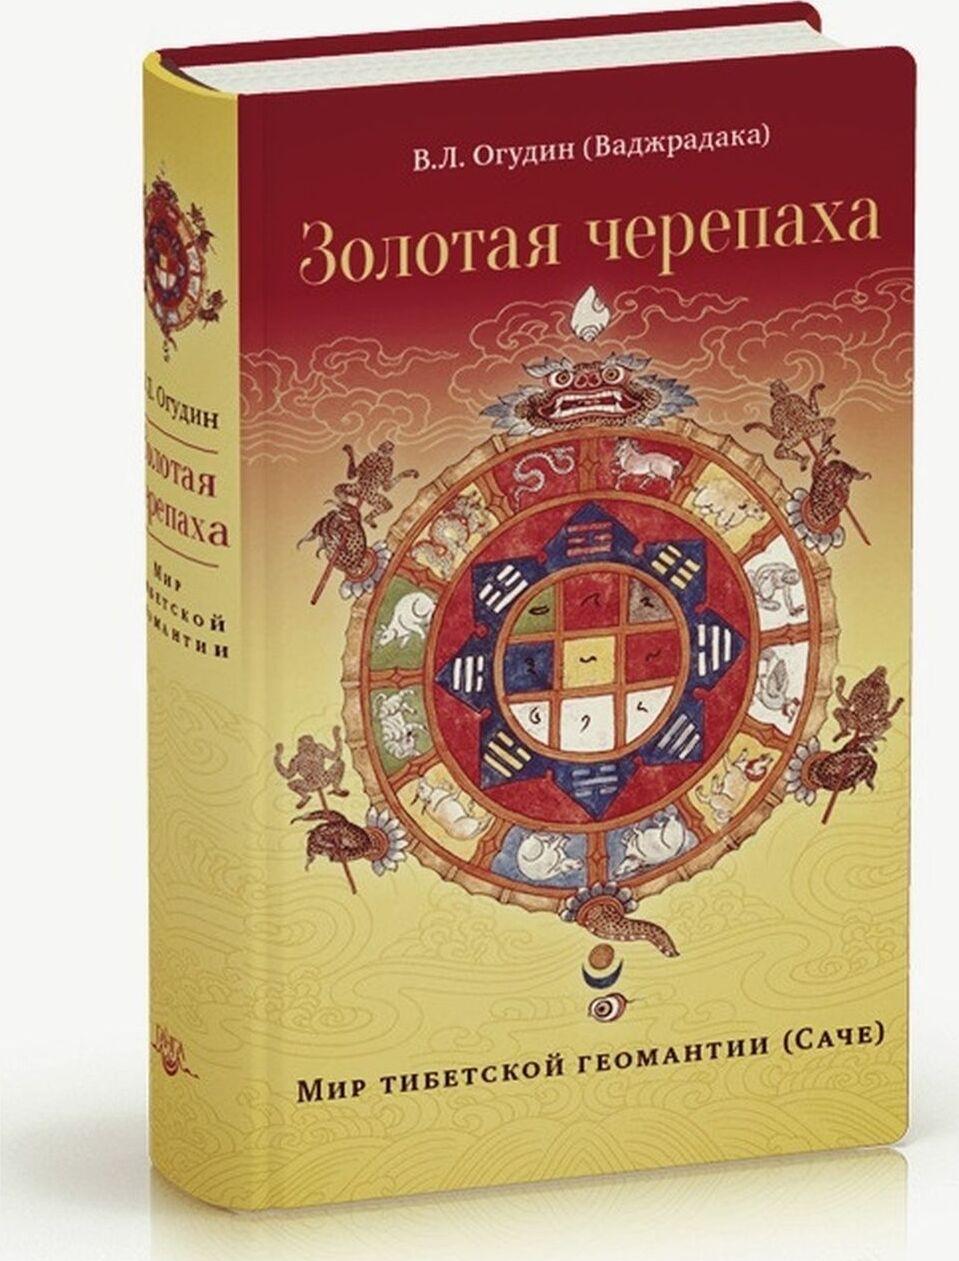 Kniha Золотая черепаха. Мир тибетской геомантии (Саче) В. Огудин